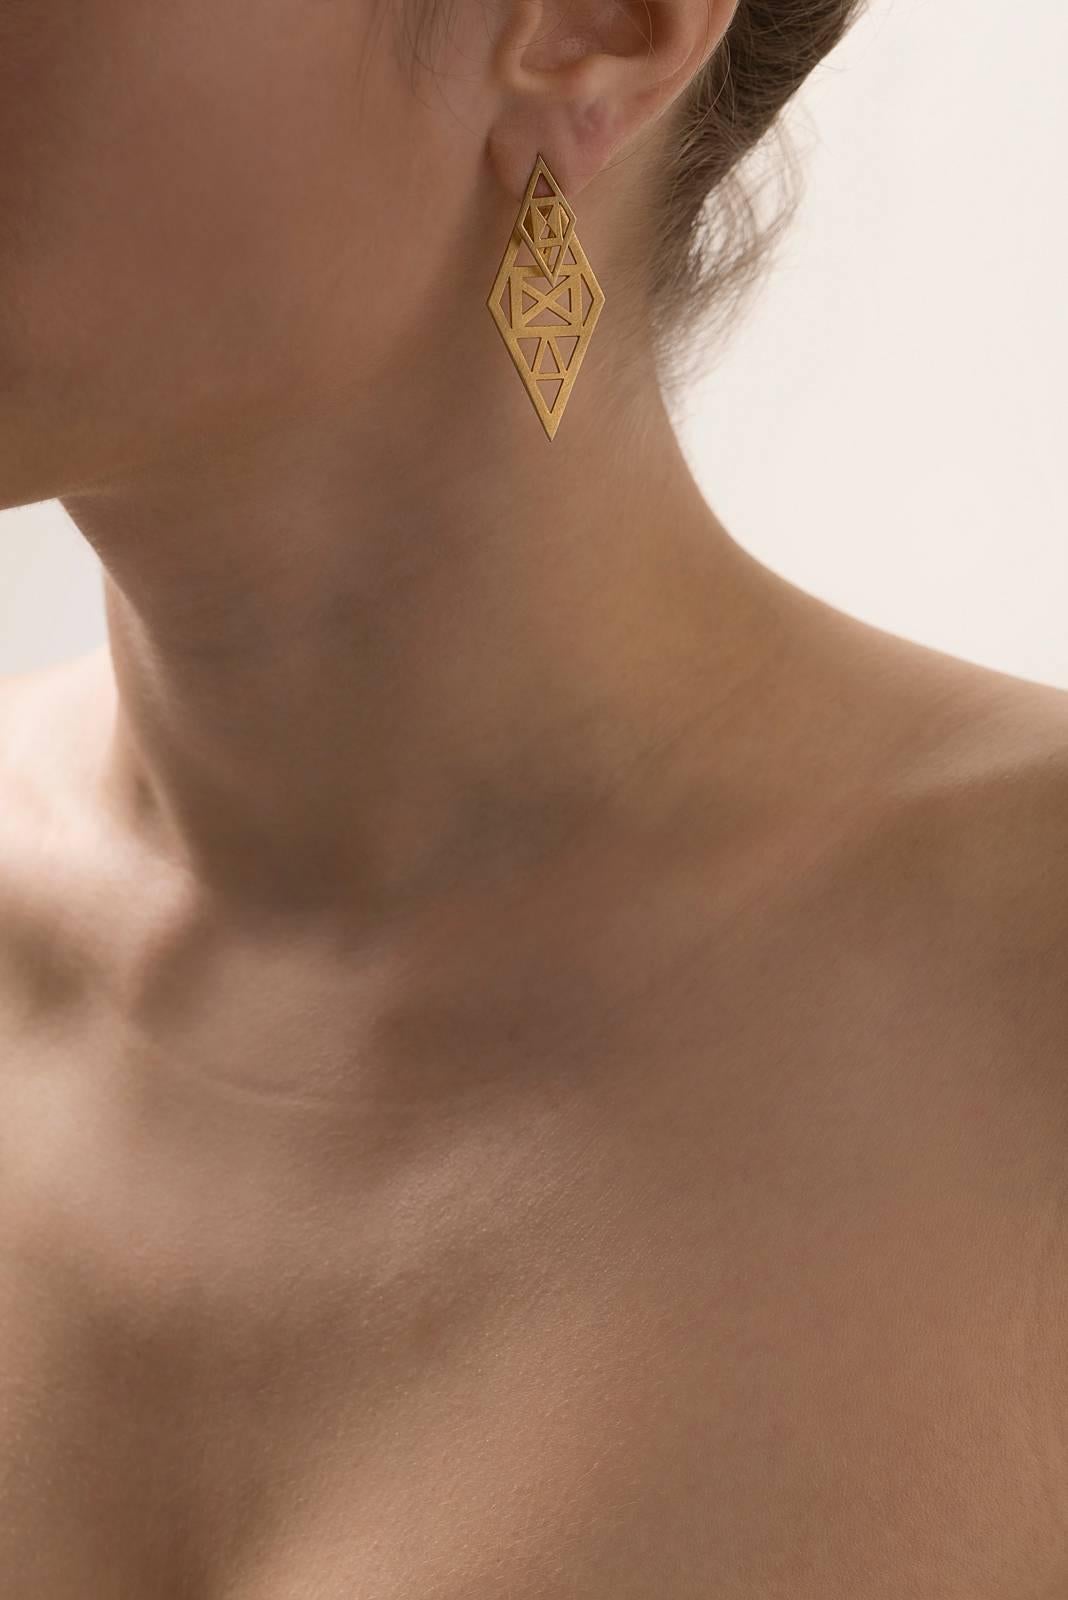 rhombus shape earrings